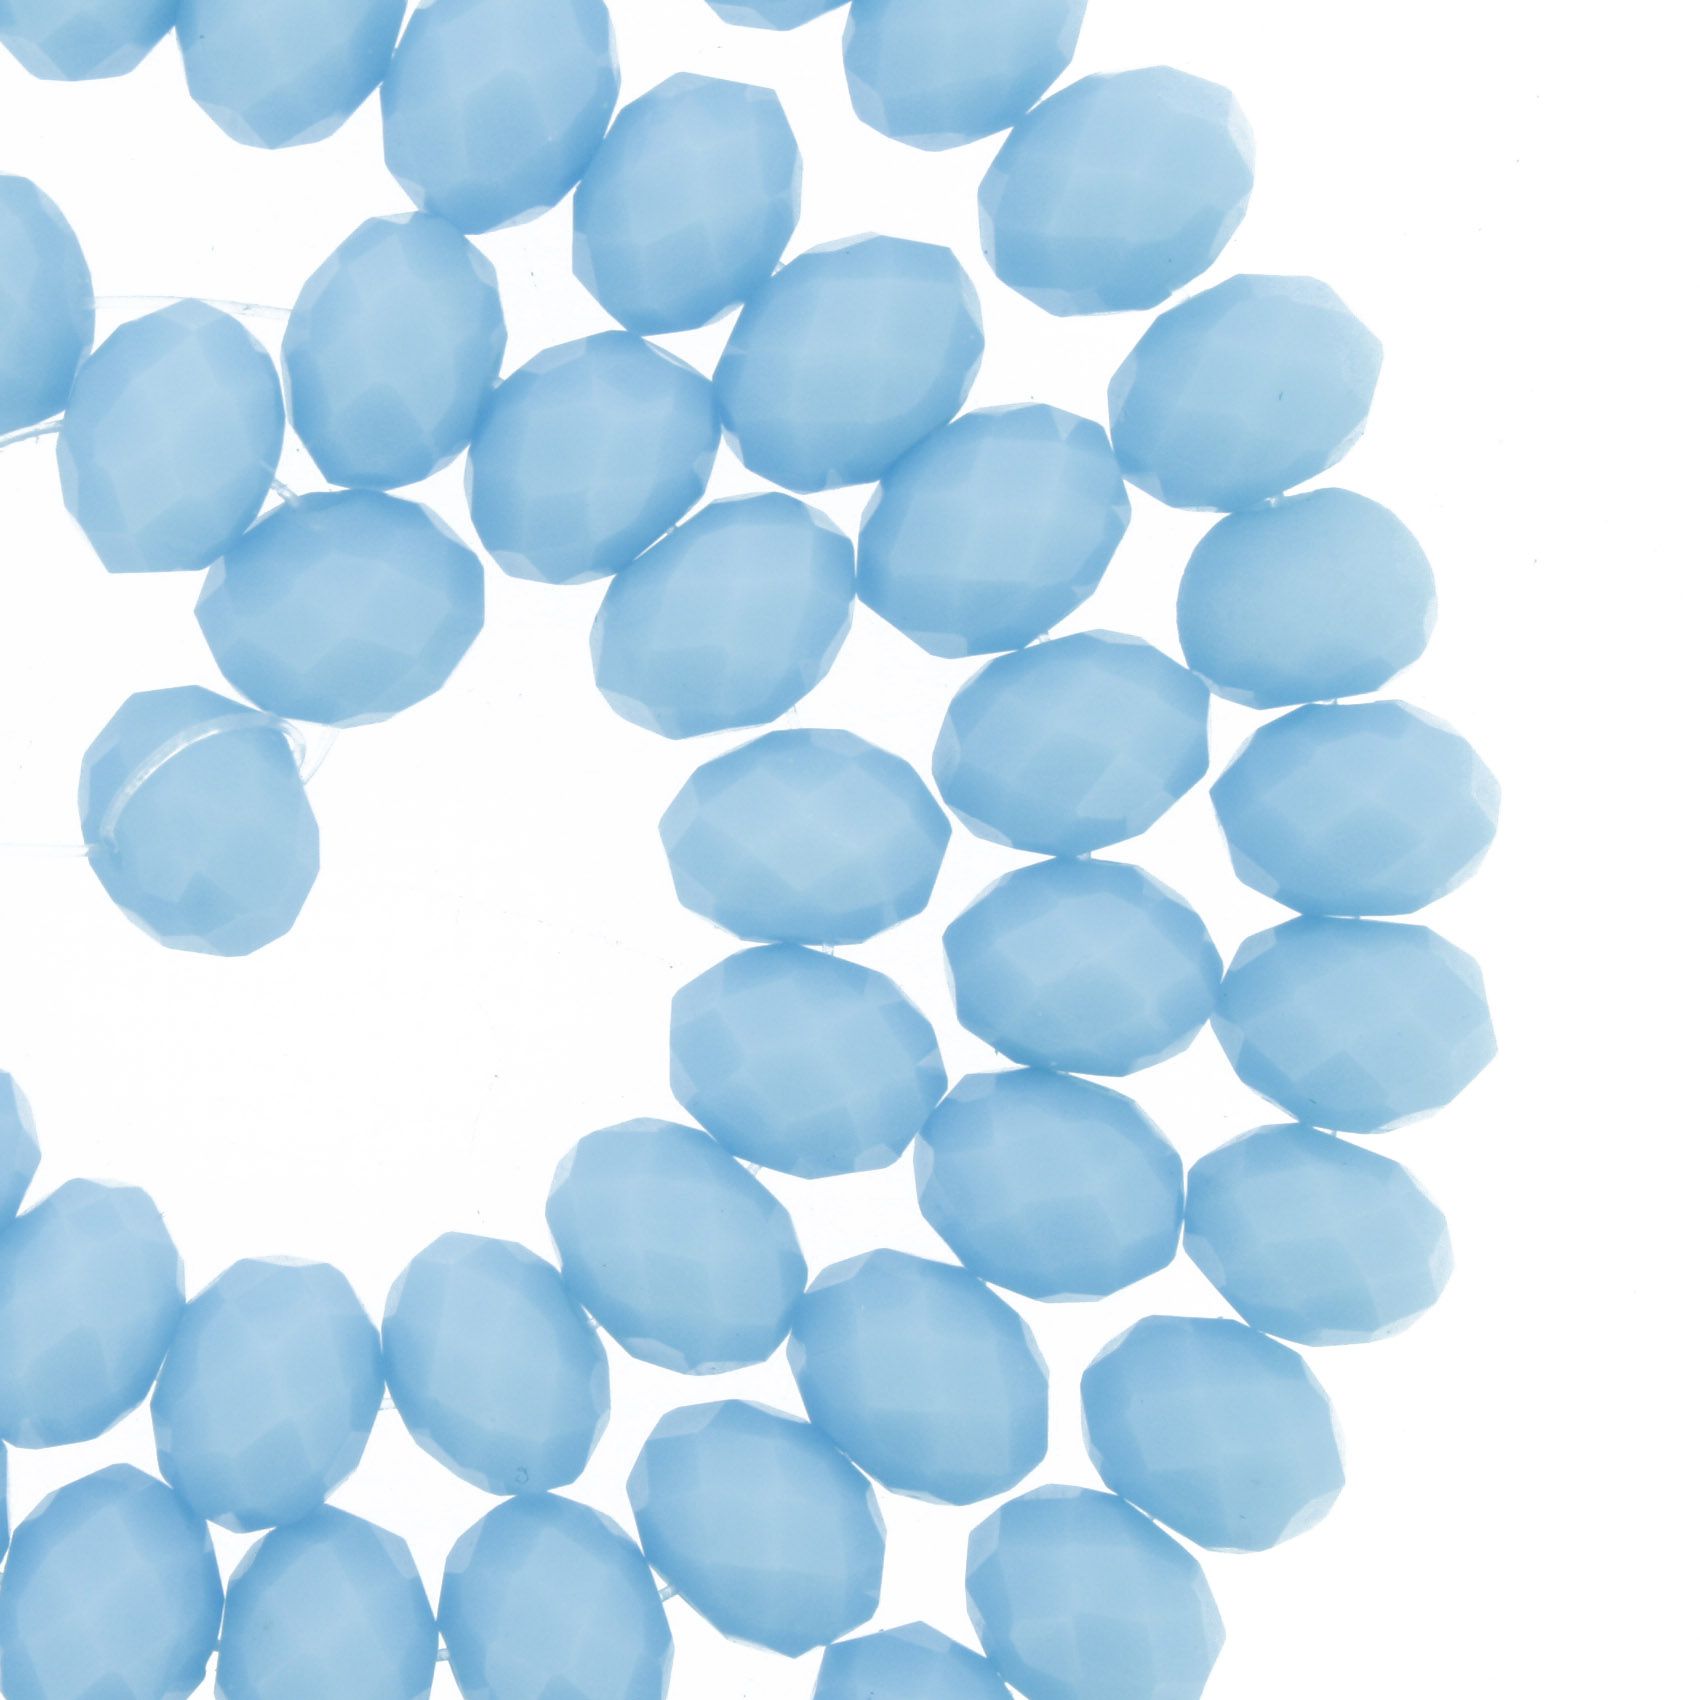 Fio de Cristal - Flat® - Azul Claro - 8mm  - Stéphanie Bijoux® - Peças para Bijuterias e Artesanato